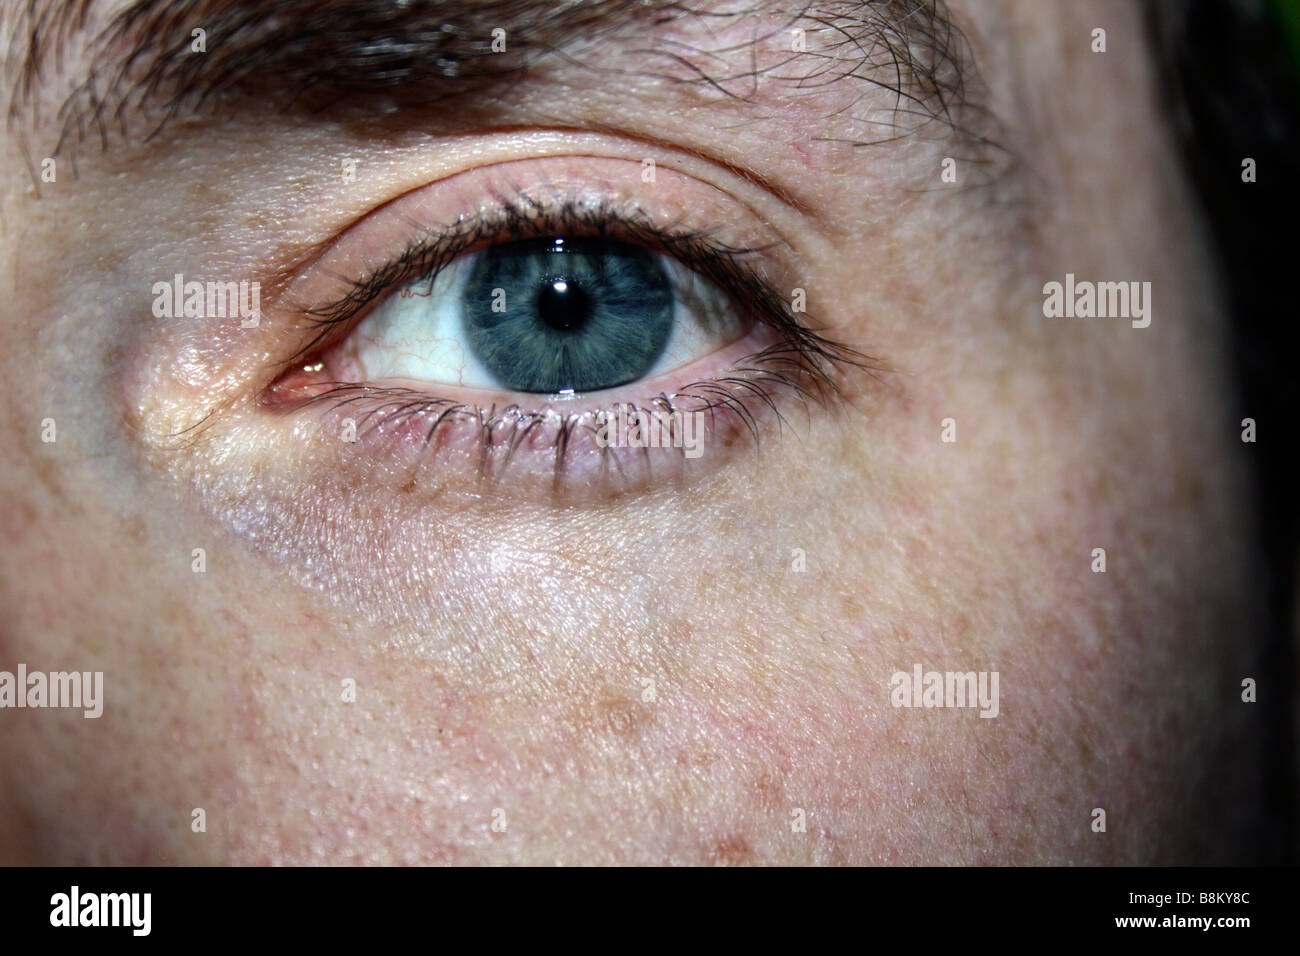 Male eye, open, aware conscious Blue Stock Photo